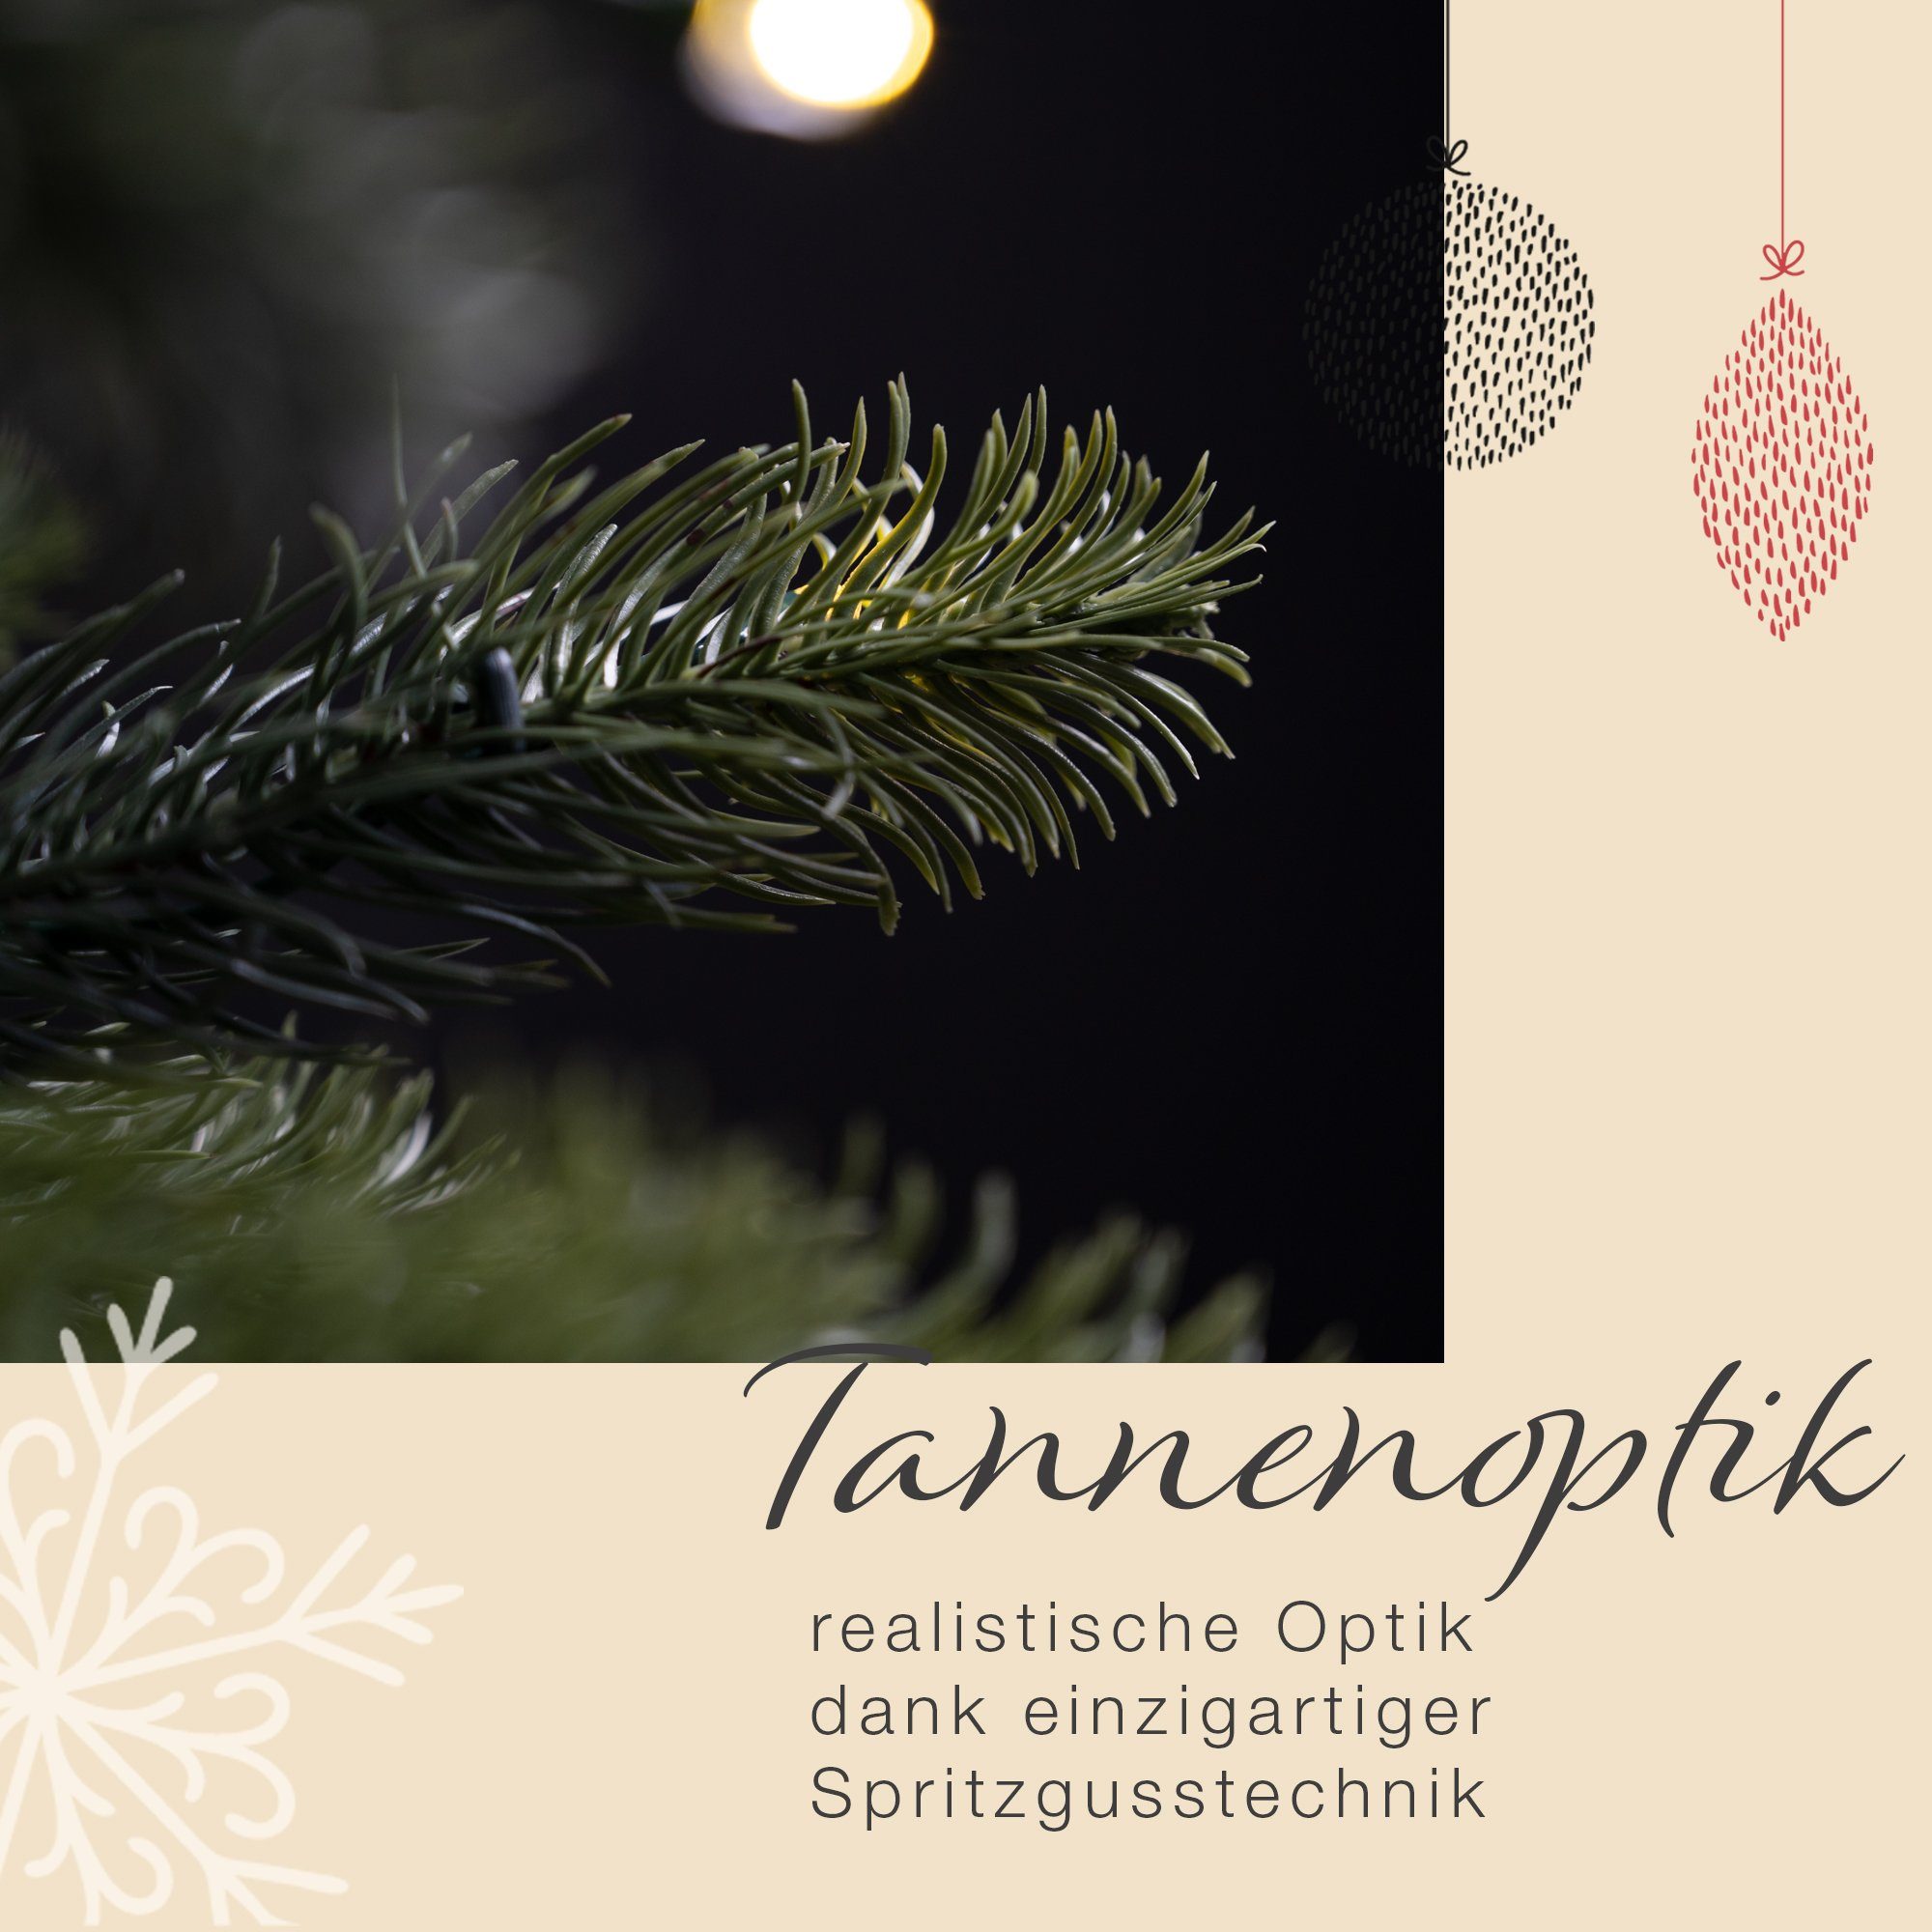 Weihnachtsbaum Spritzguss Weihnachtsbaum Beleuchtung hochwertig Sehr 210cm, Künstlicher LED Nordmanntanne, SCHAUMEX mit Höhe: